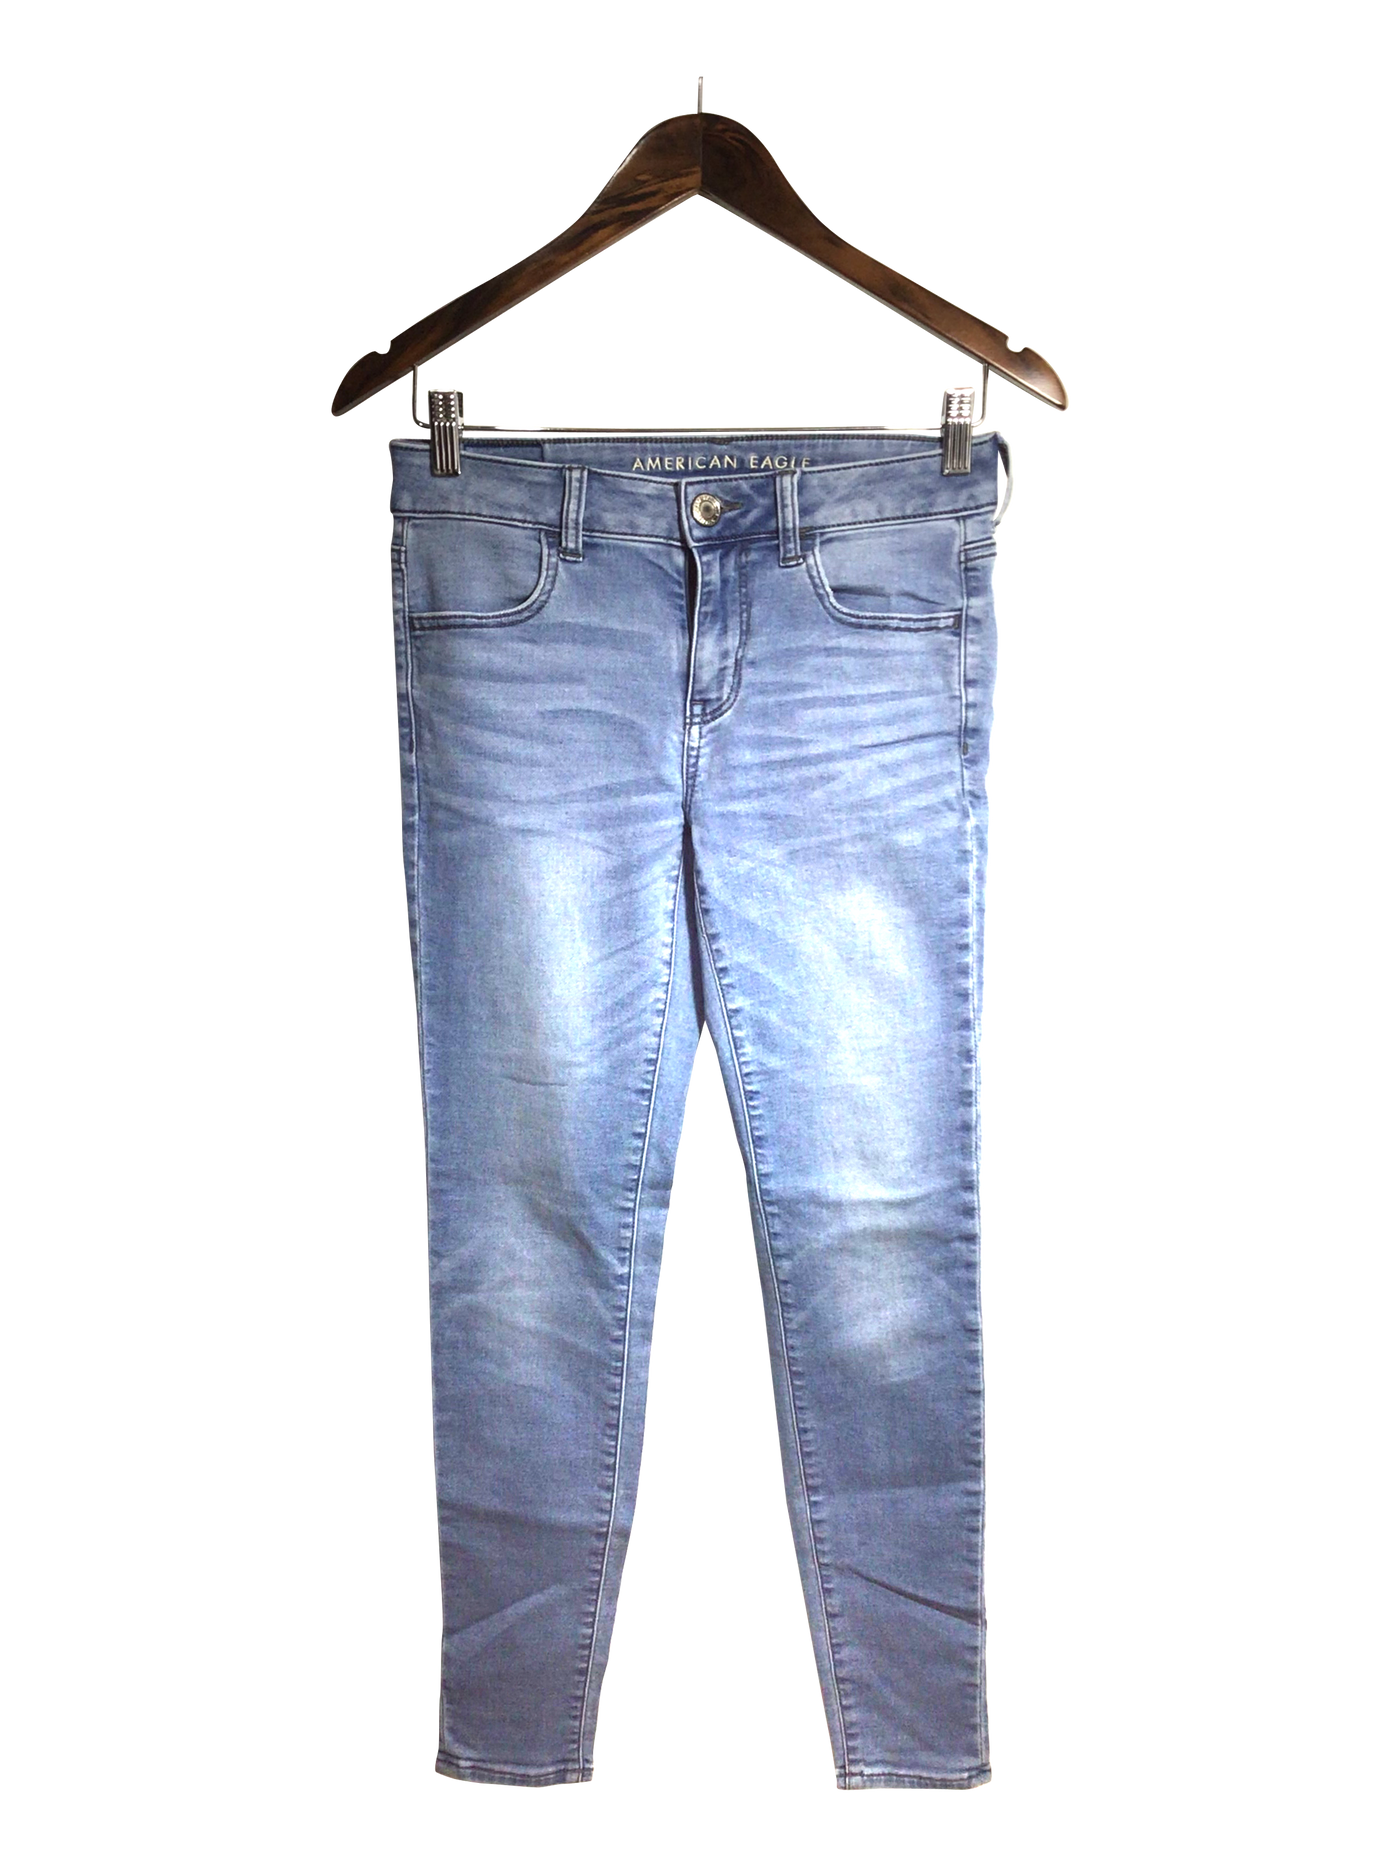 AMERICAN EAGLE Women Straight-Legged Jeans Regular fit in Blue - Size 4 | 14.9 $ KOOP